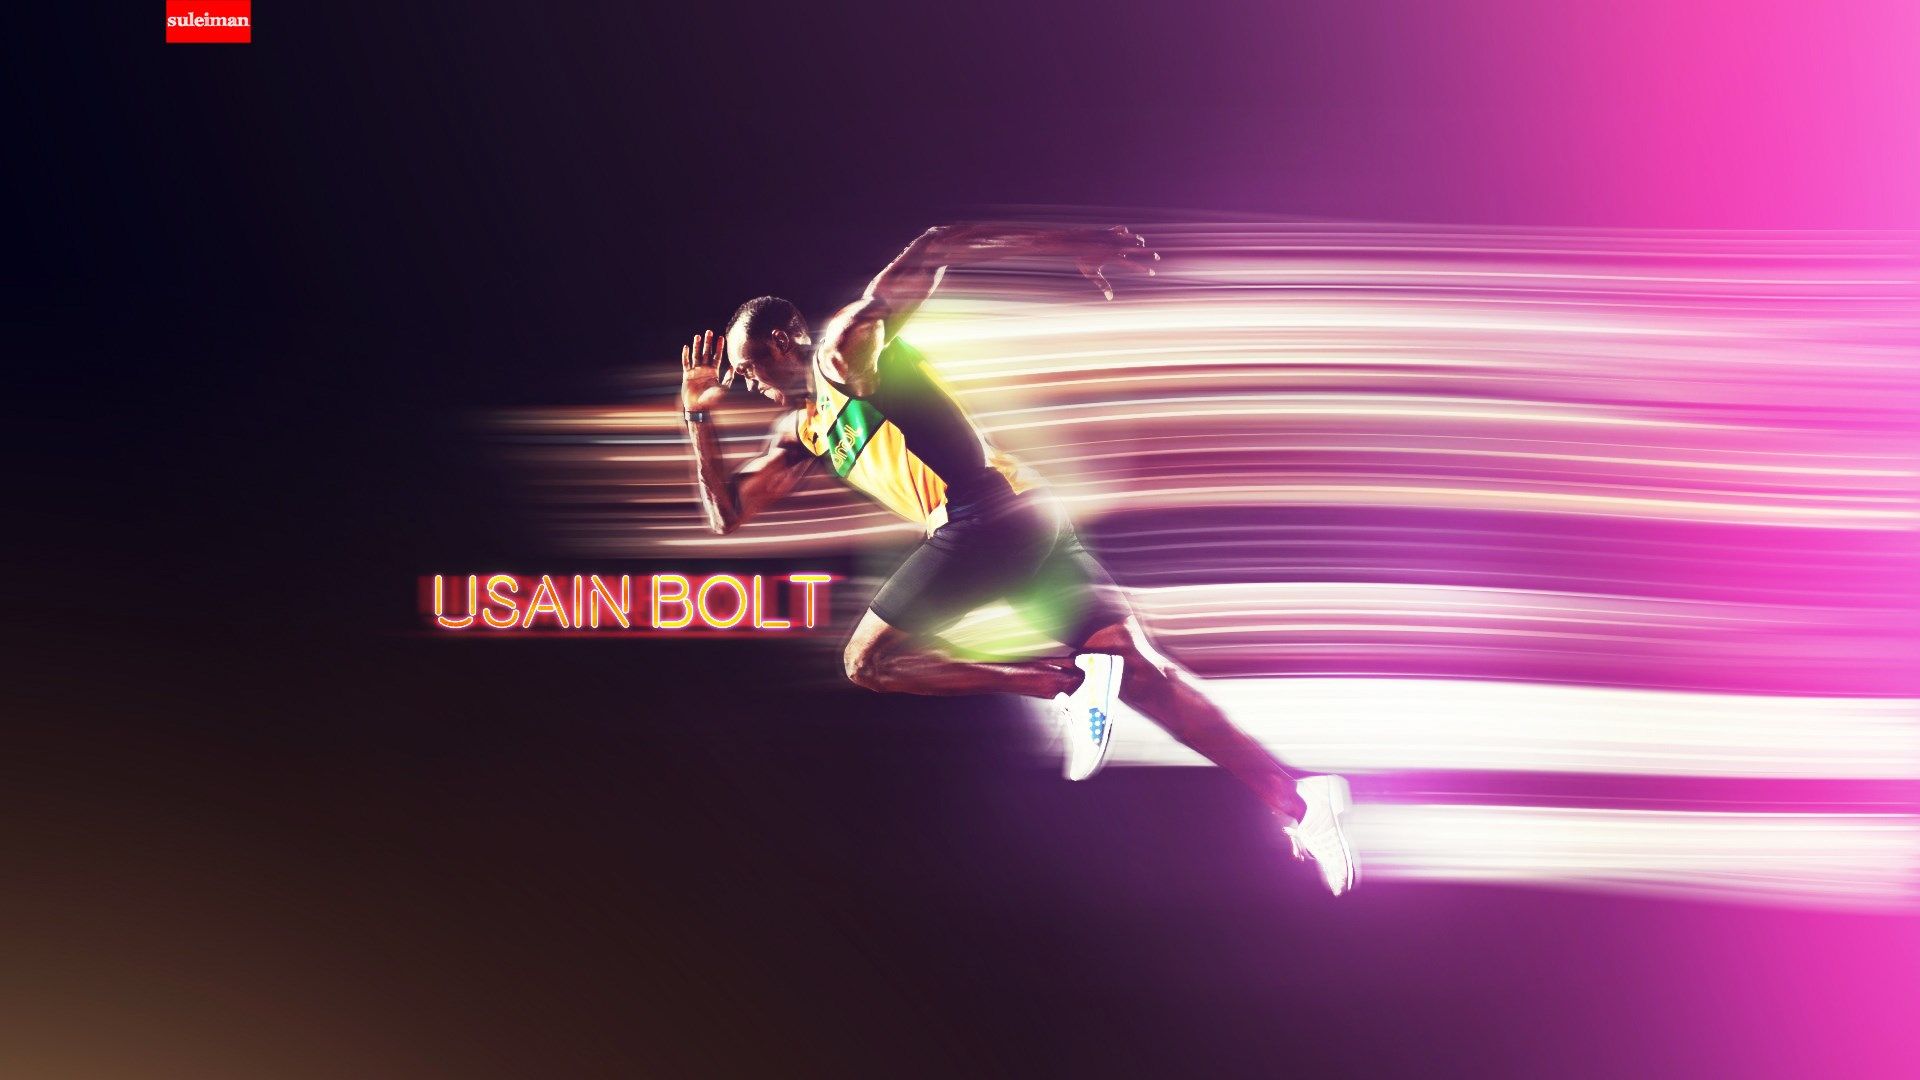 Usain Bolt Wallpaper For Windows - Usain Bolt Wallpaper Hd , HD Wallpaper & Backgrounds